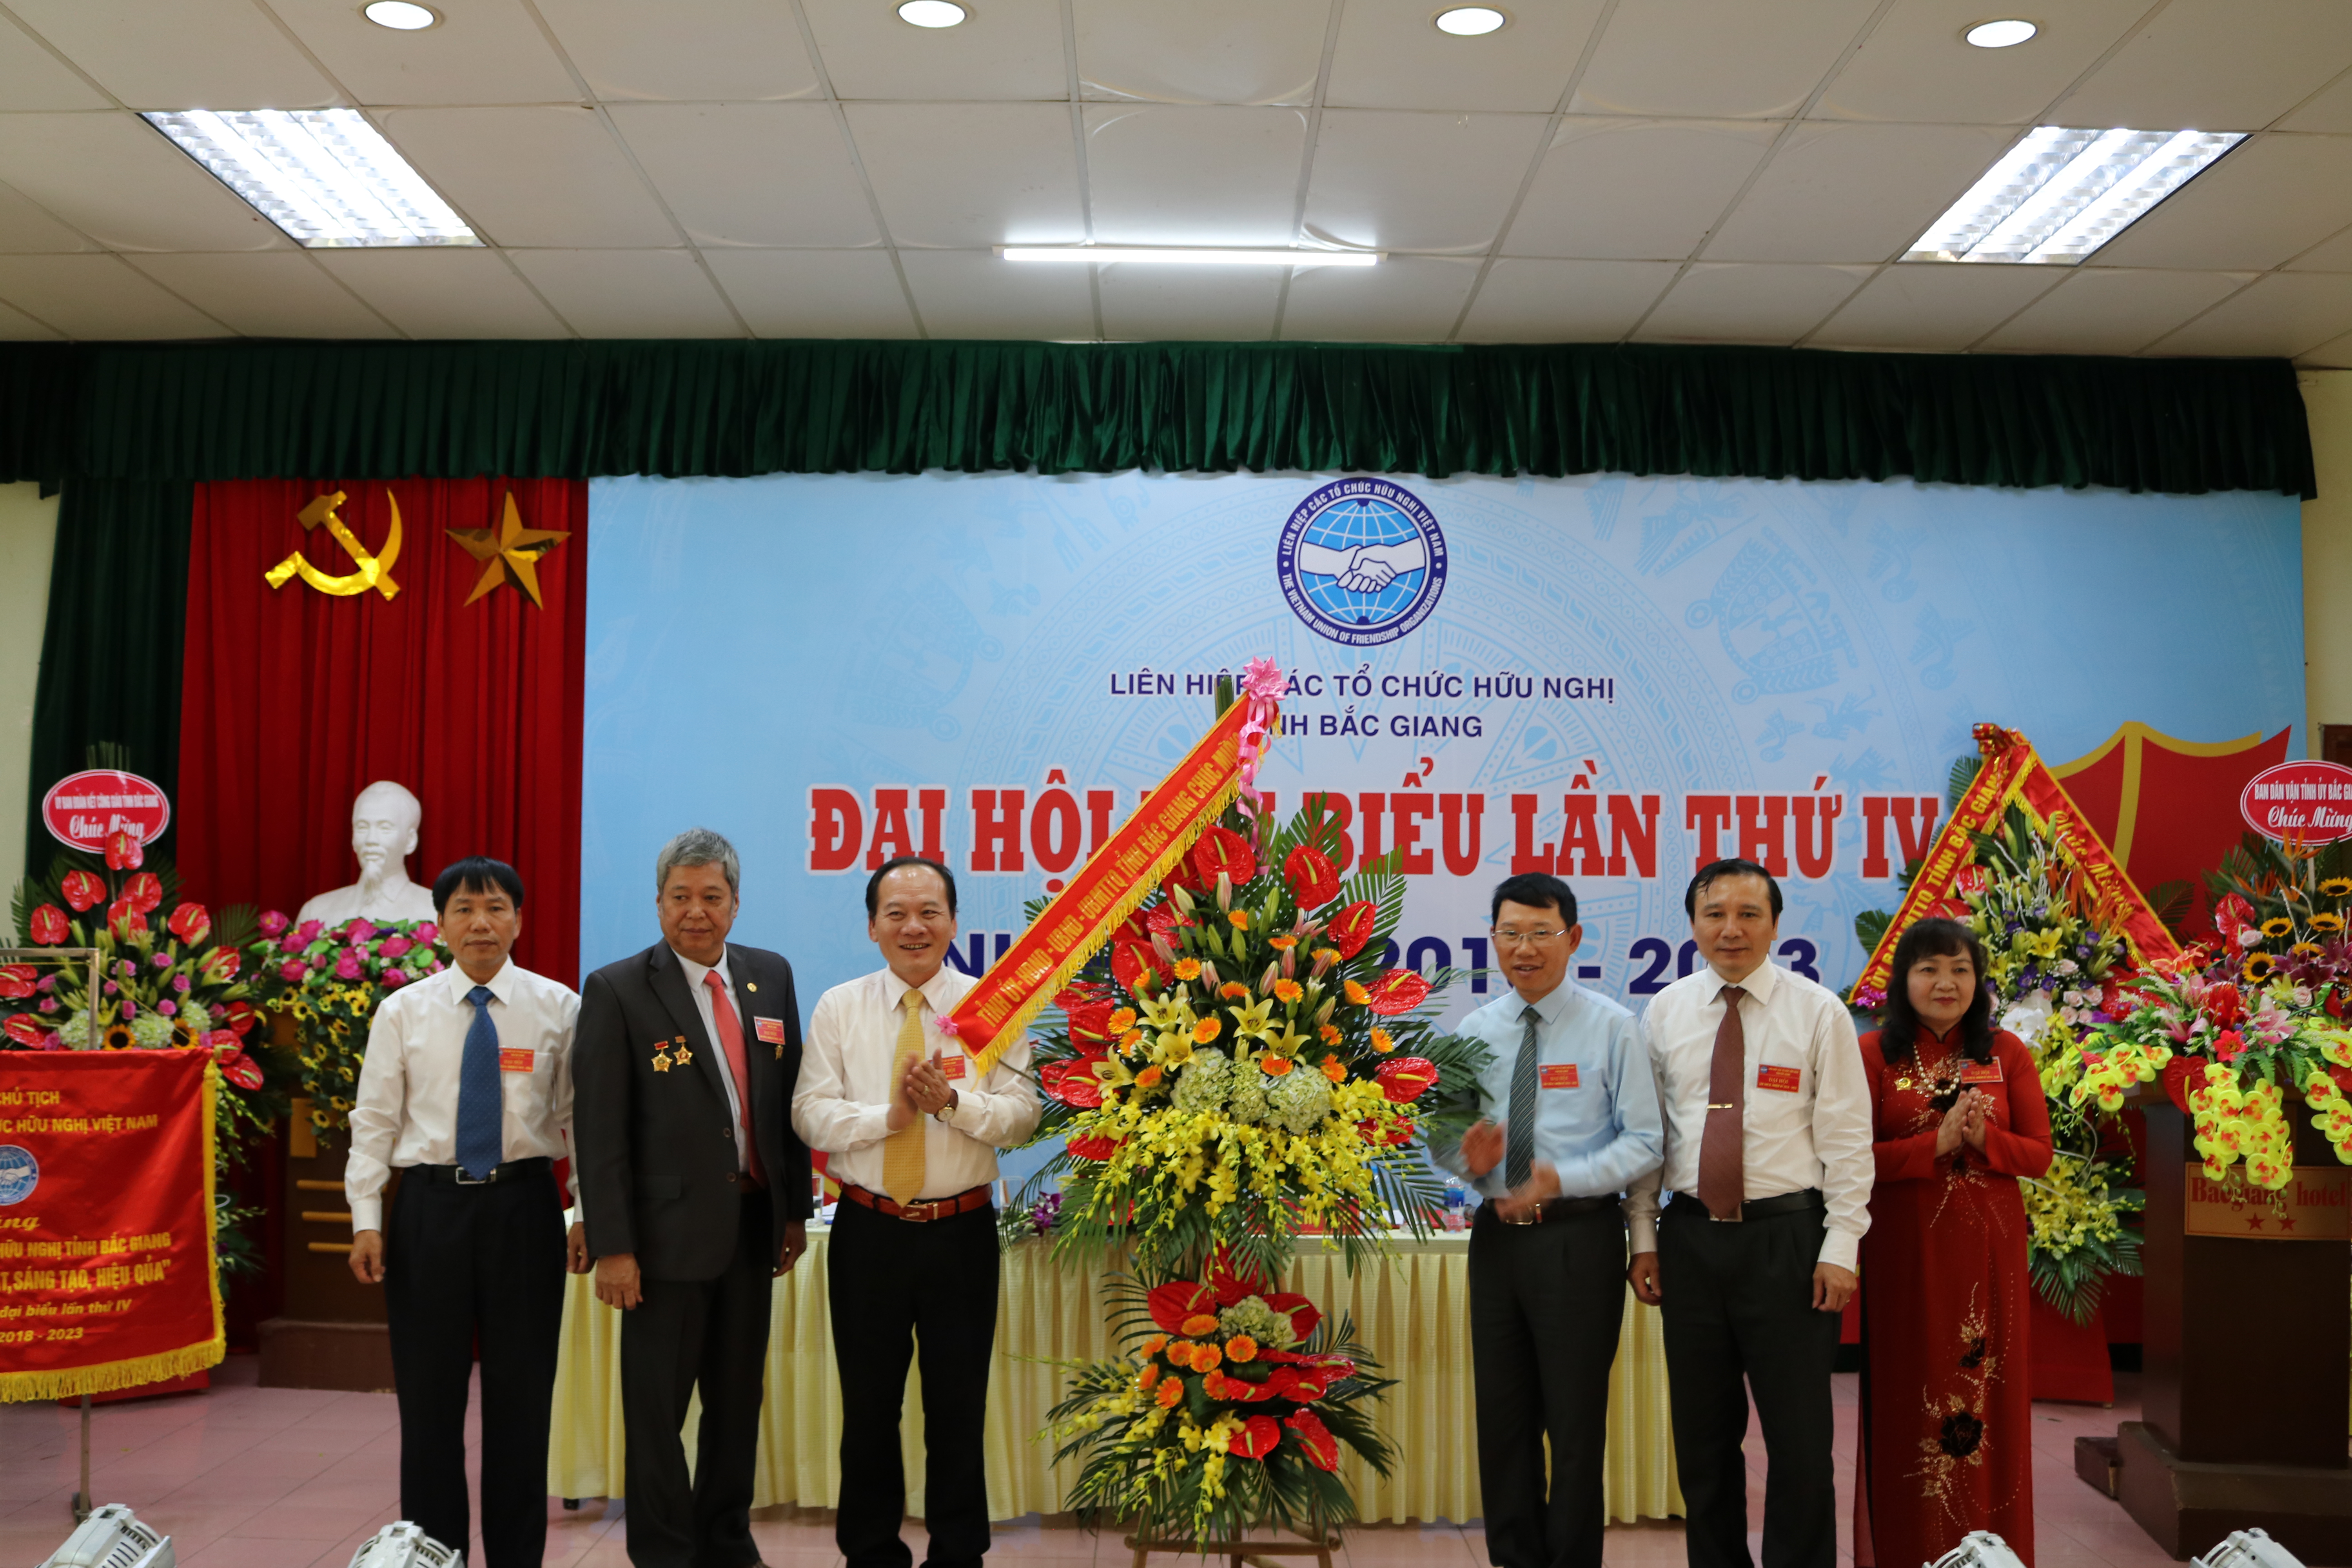 Đại hội đại biểu Liên hiệp các tổ chức hữu nghị tỉnh Bắc Giang  lần thứ IV 